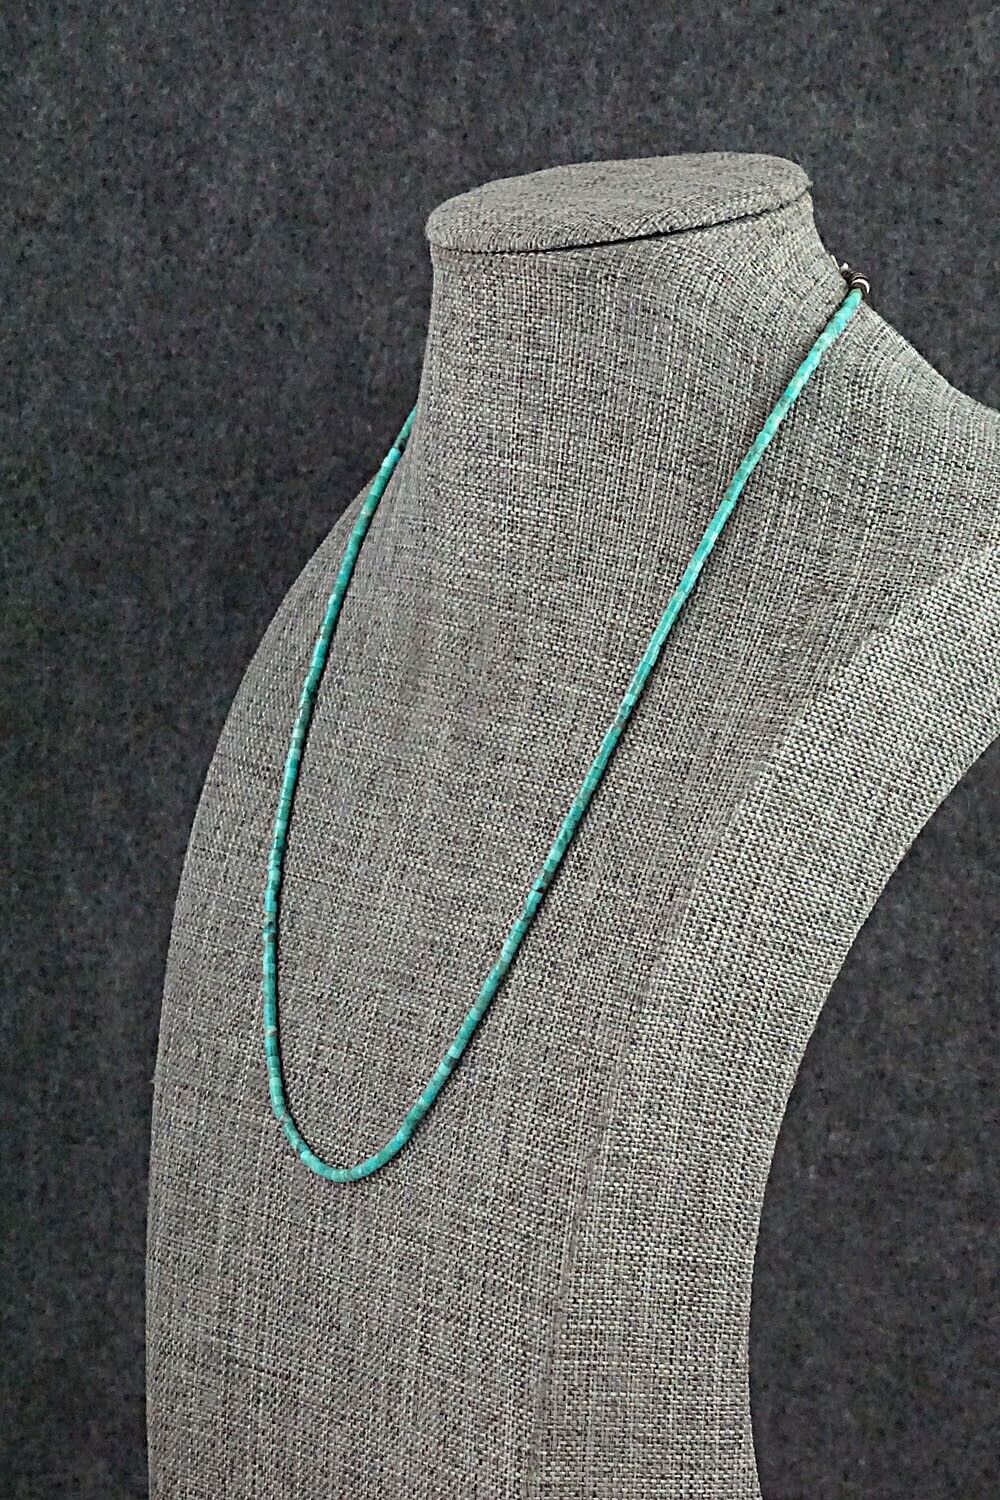 Turquoise & Shell Necklace 18" - Ramona Calavaza